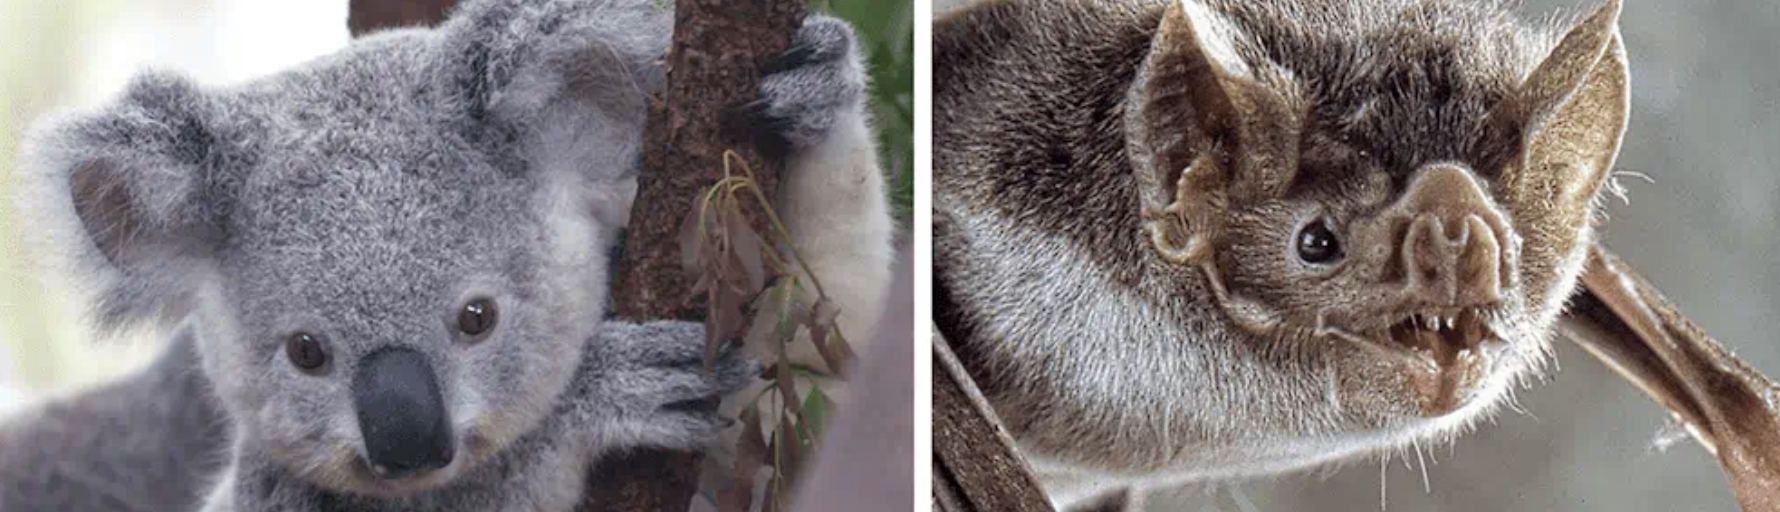 A koala and bat